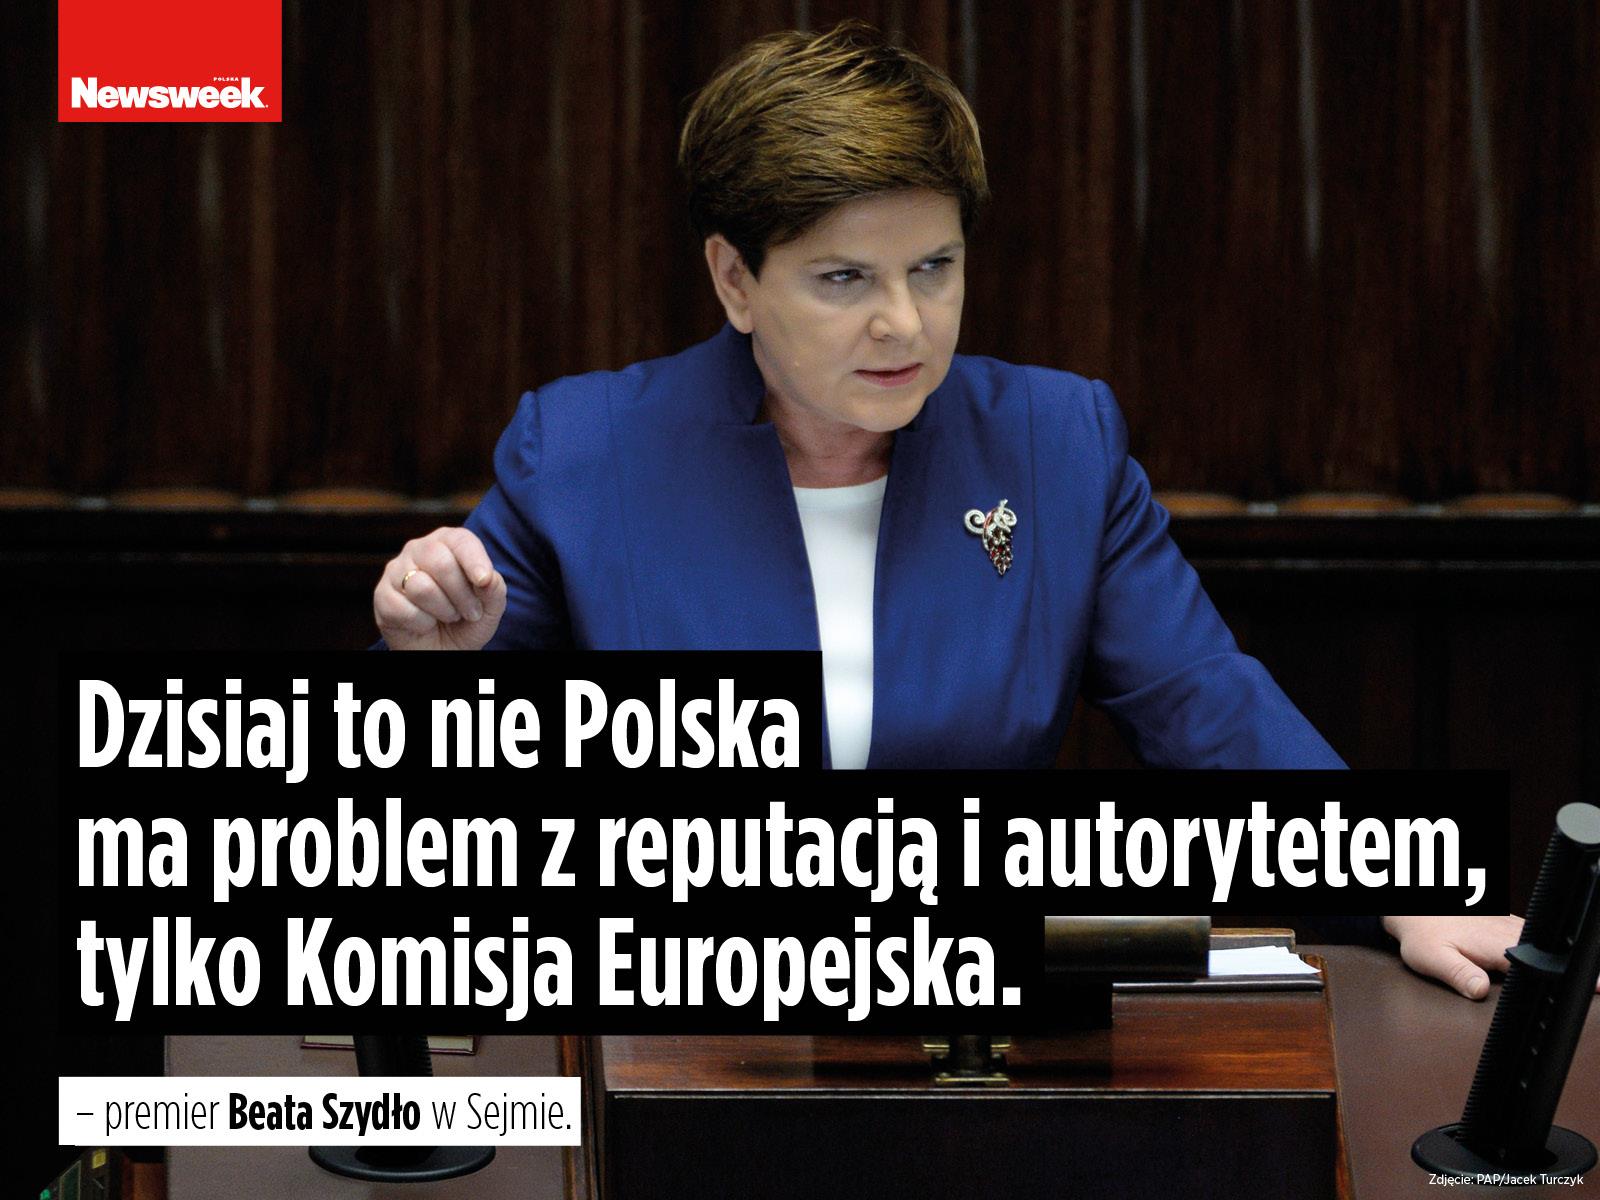 Beata Szydło polityka PiS Prawo i Sprawiedliwość